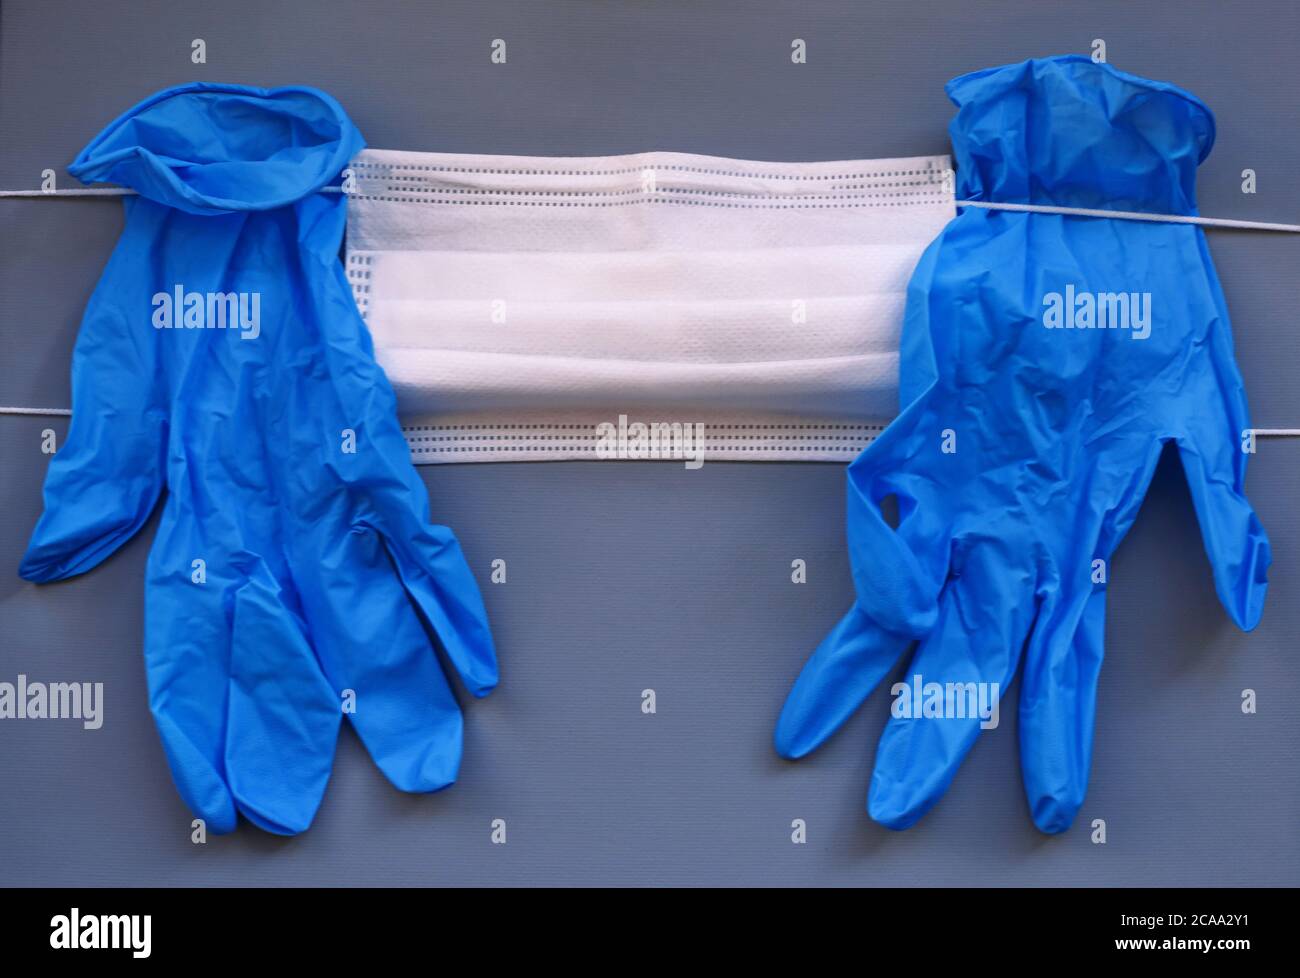 Paar medizinische blaue Latex Schutzhandschuh und weiße Maske auf grauem Hintergrund. Schutzausrüstung gegen Virus, Grippe, Coronavirus (COVID-19). Stockfoto